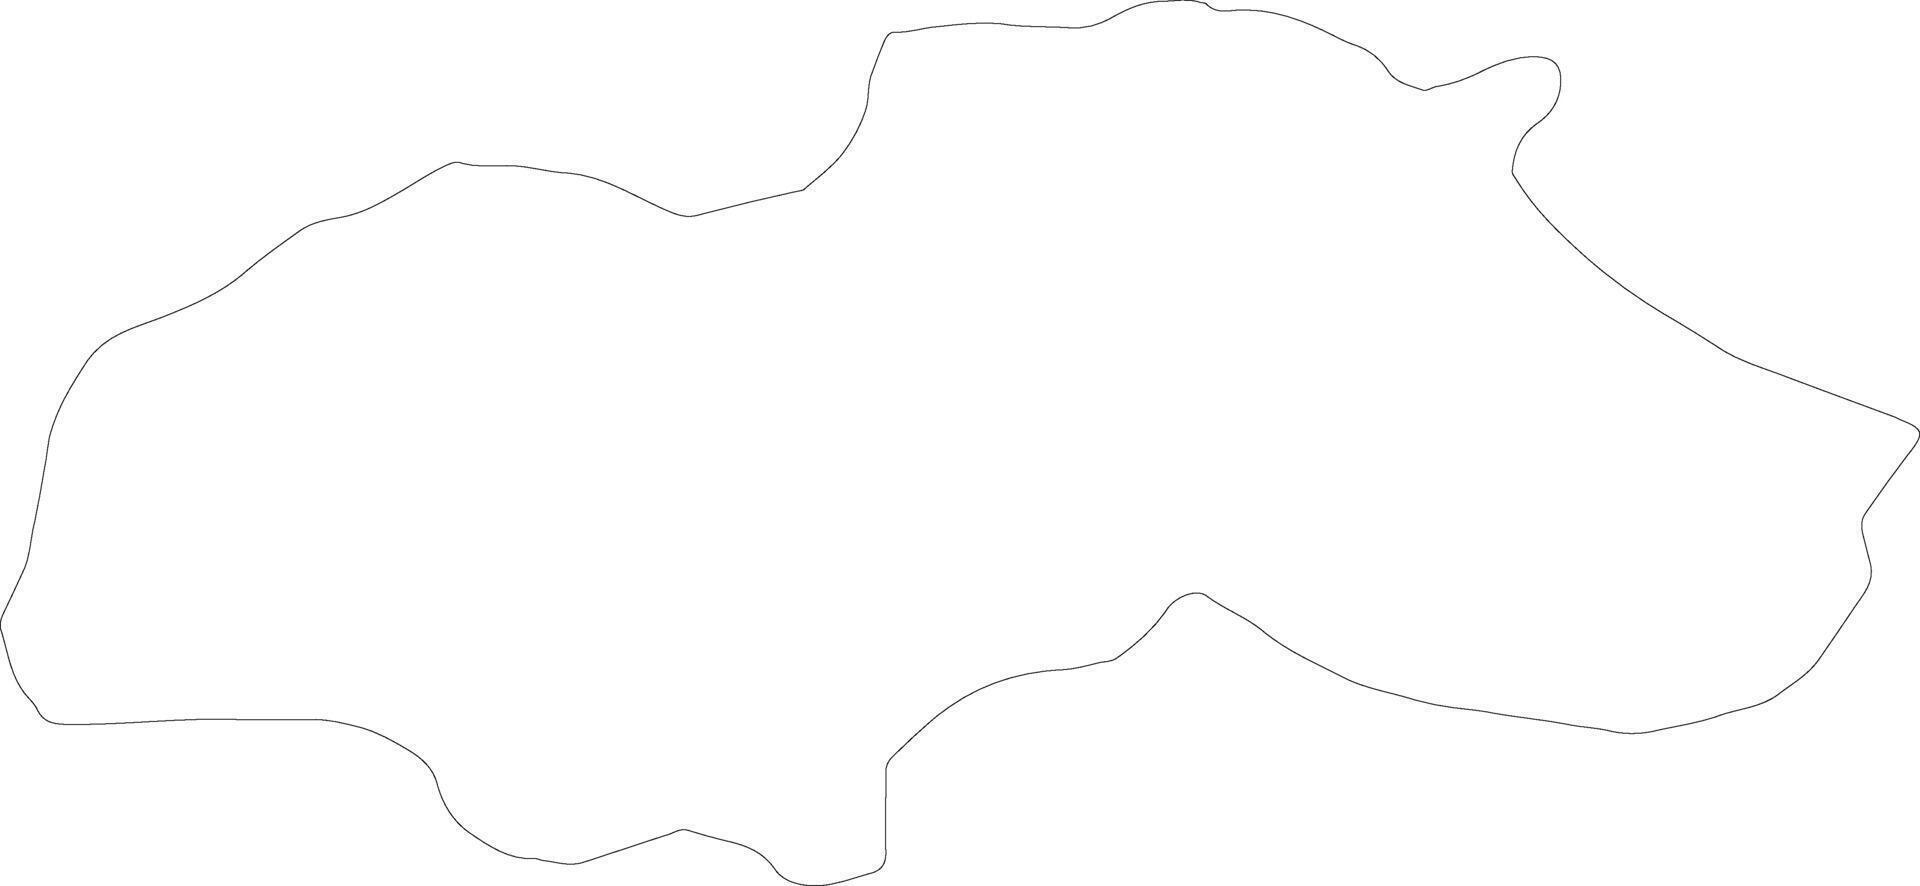 trebnje slovenien översikt Karta vektor